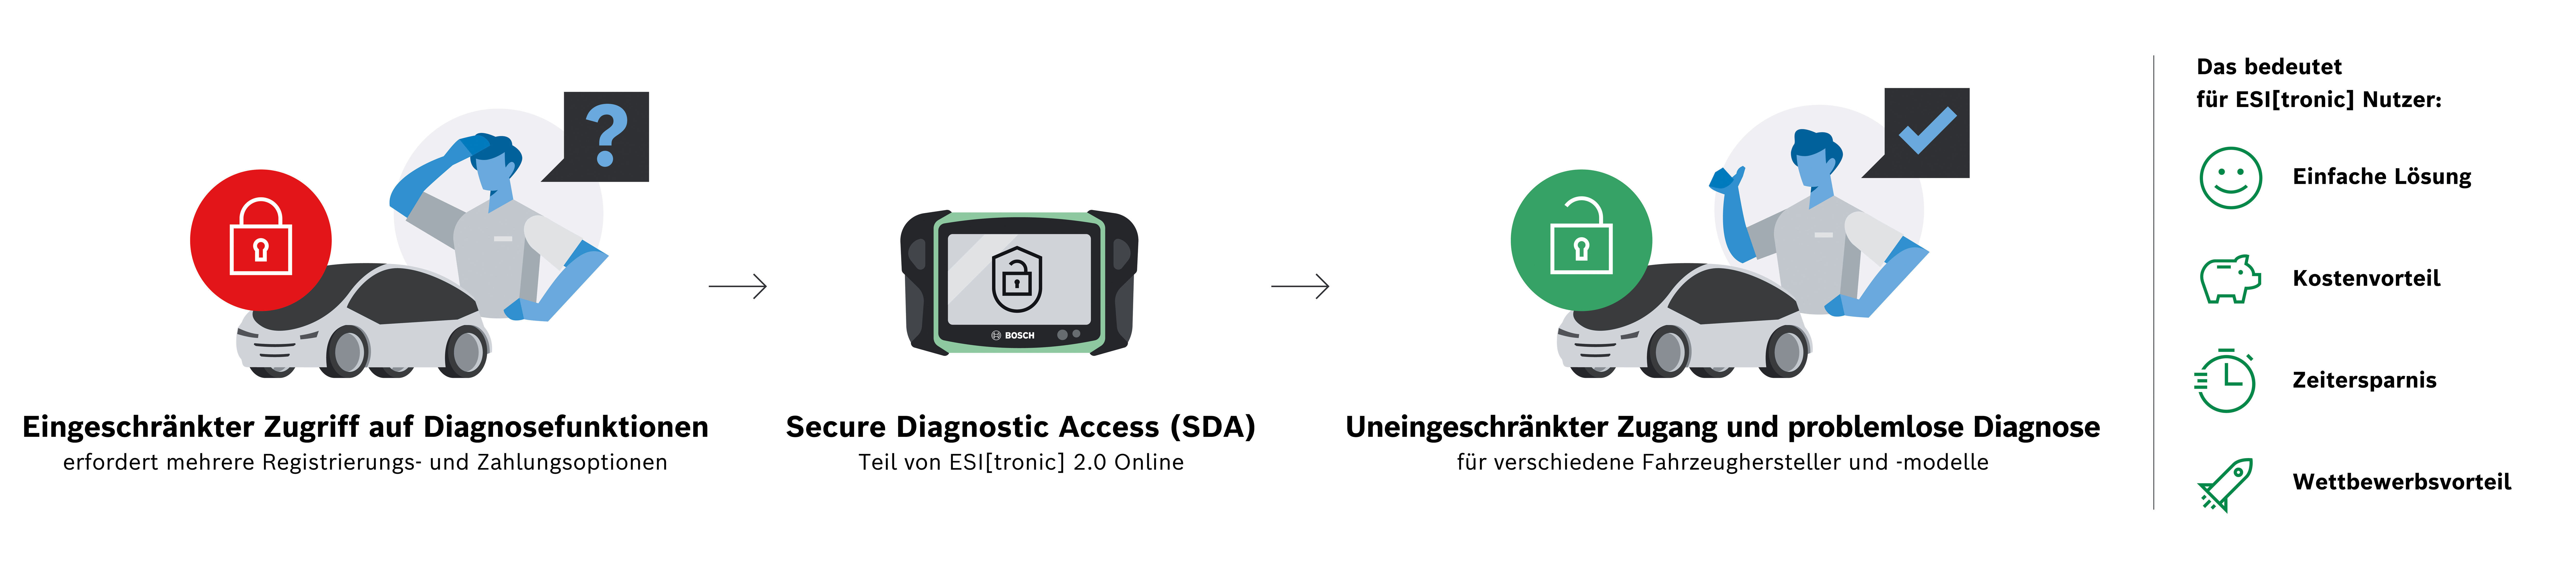 Centrální přístup k zabezpečeným datům vozidla pomocí Secure Diagnostic Access (SDA) od společnosti Bosch